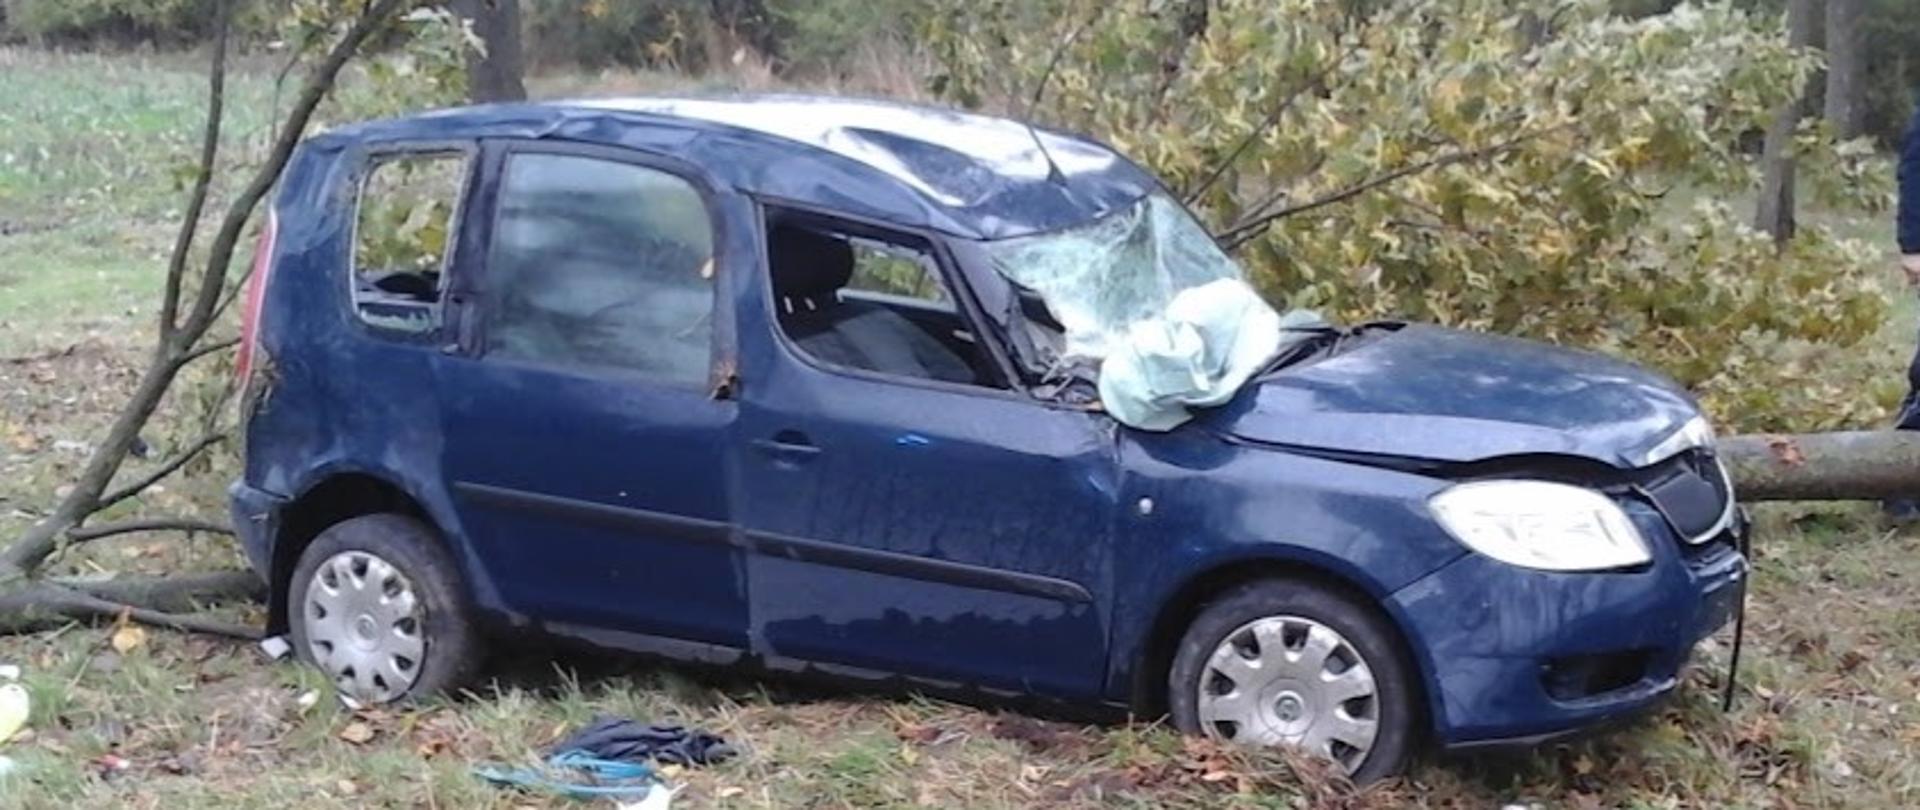 Rozbity samochód osobowy marki Skoda stojący na poboczu jezdni po uderzeniu w drzewo. 